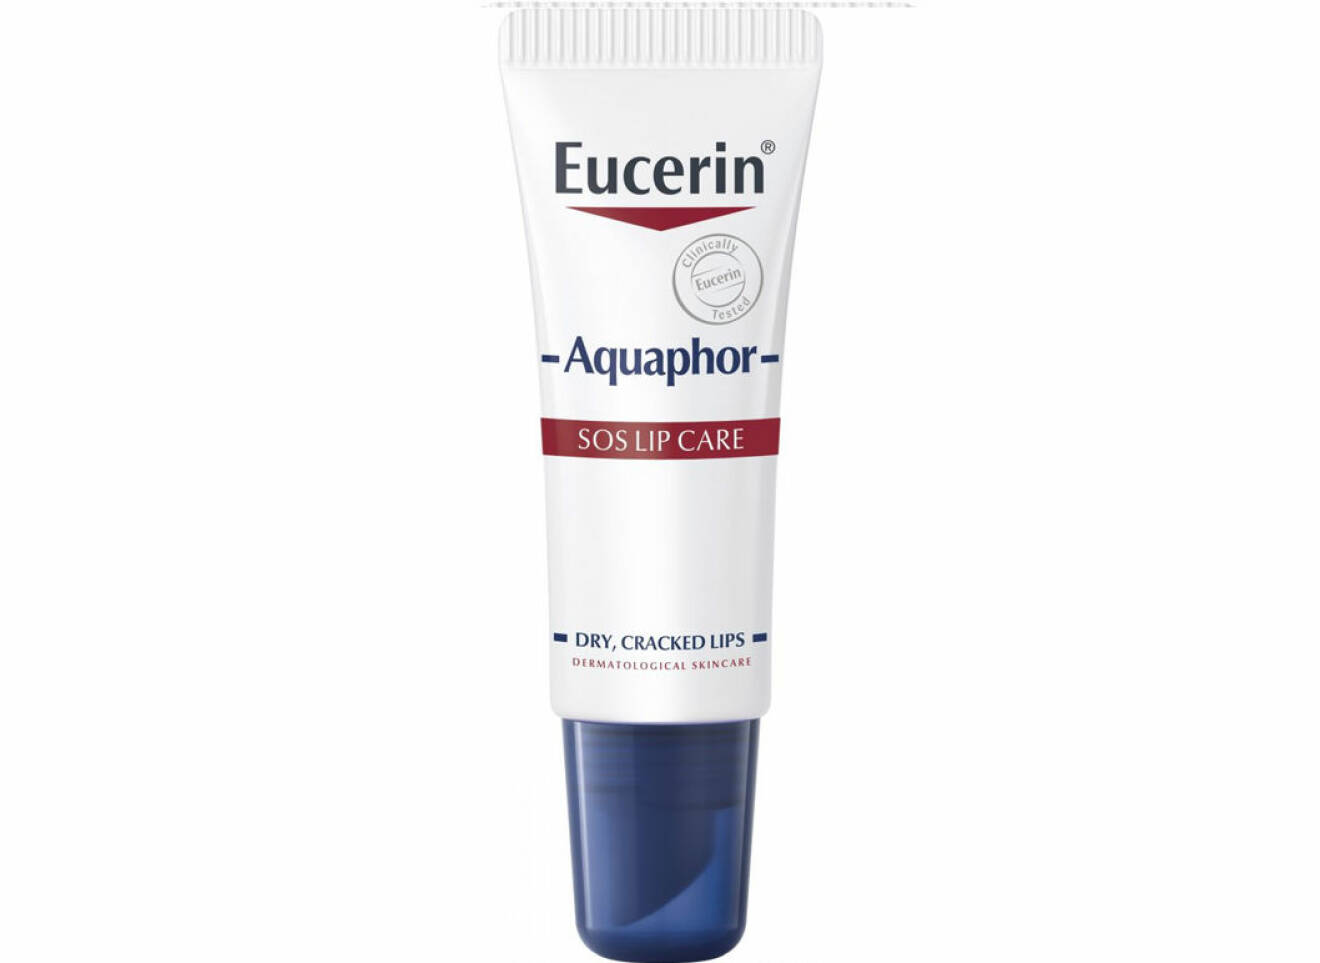 SOS lip care aquaphor från Eucerin läppbalsam bäst i test